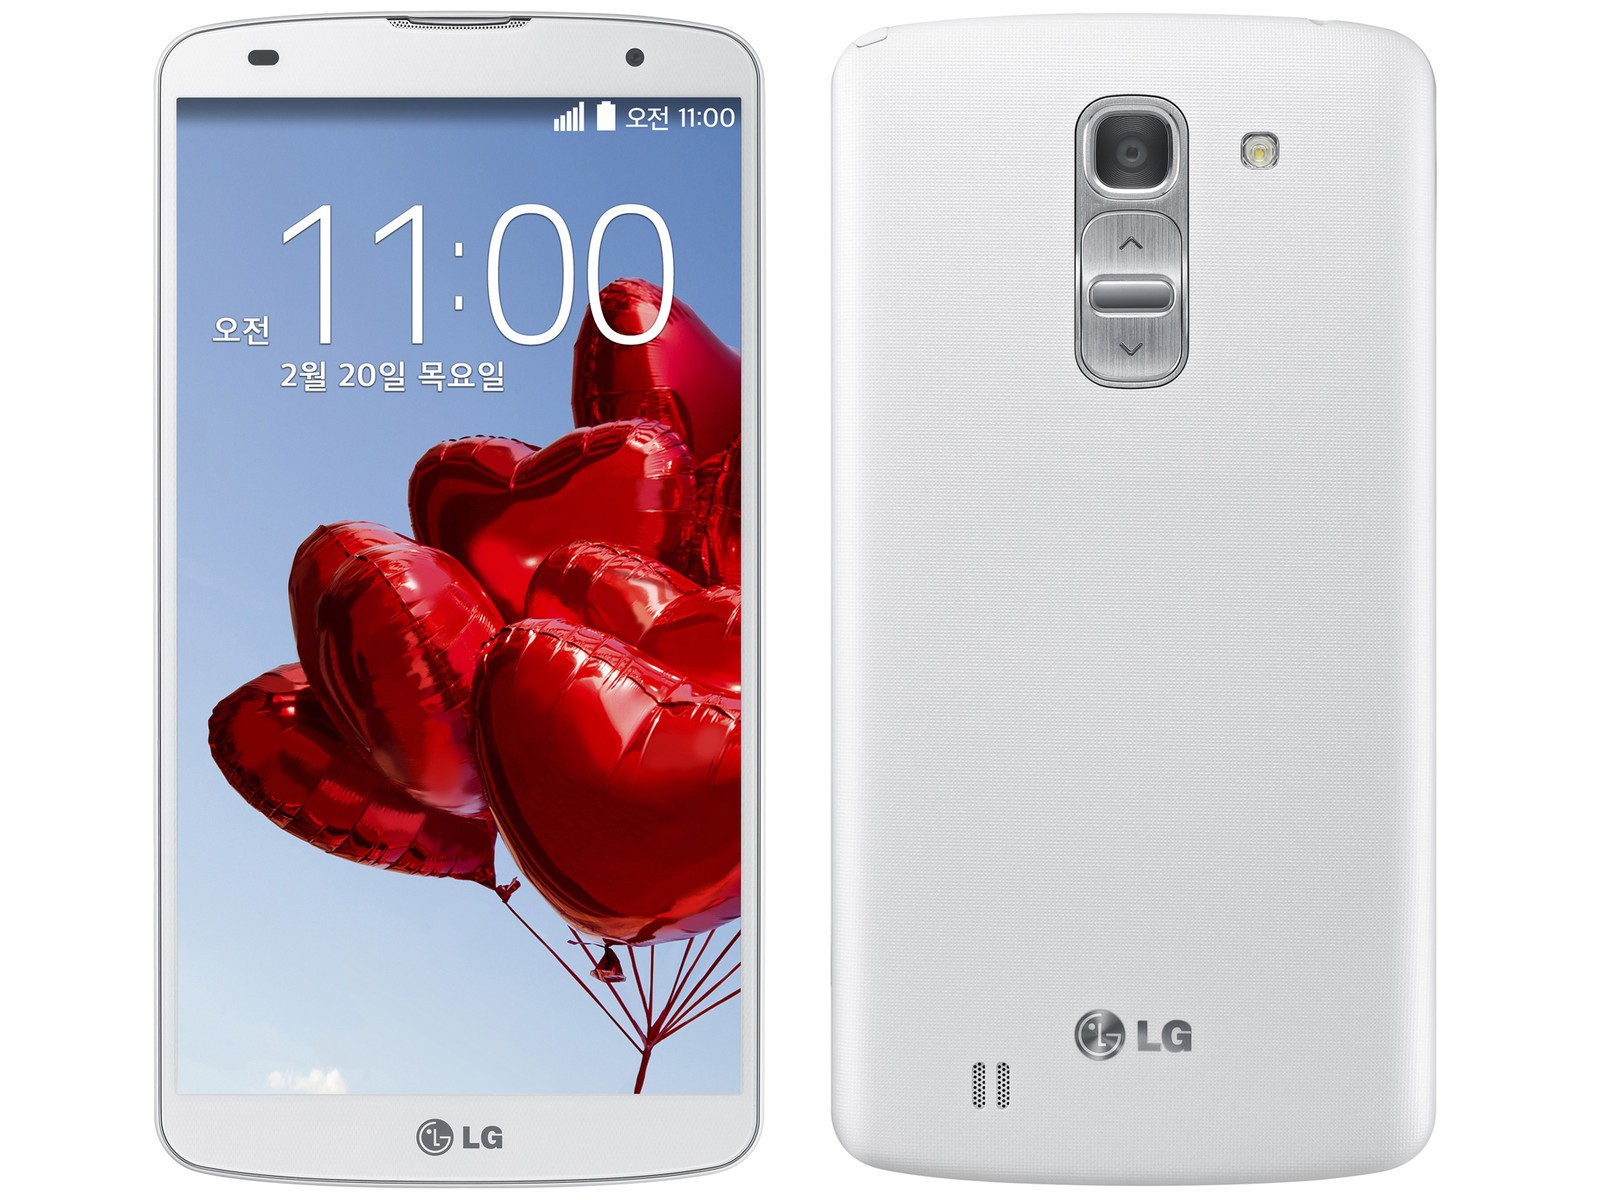 LG Optimus G Pro E985 Format Atma ve Sıfırlama